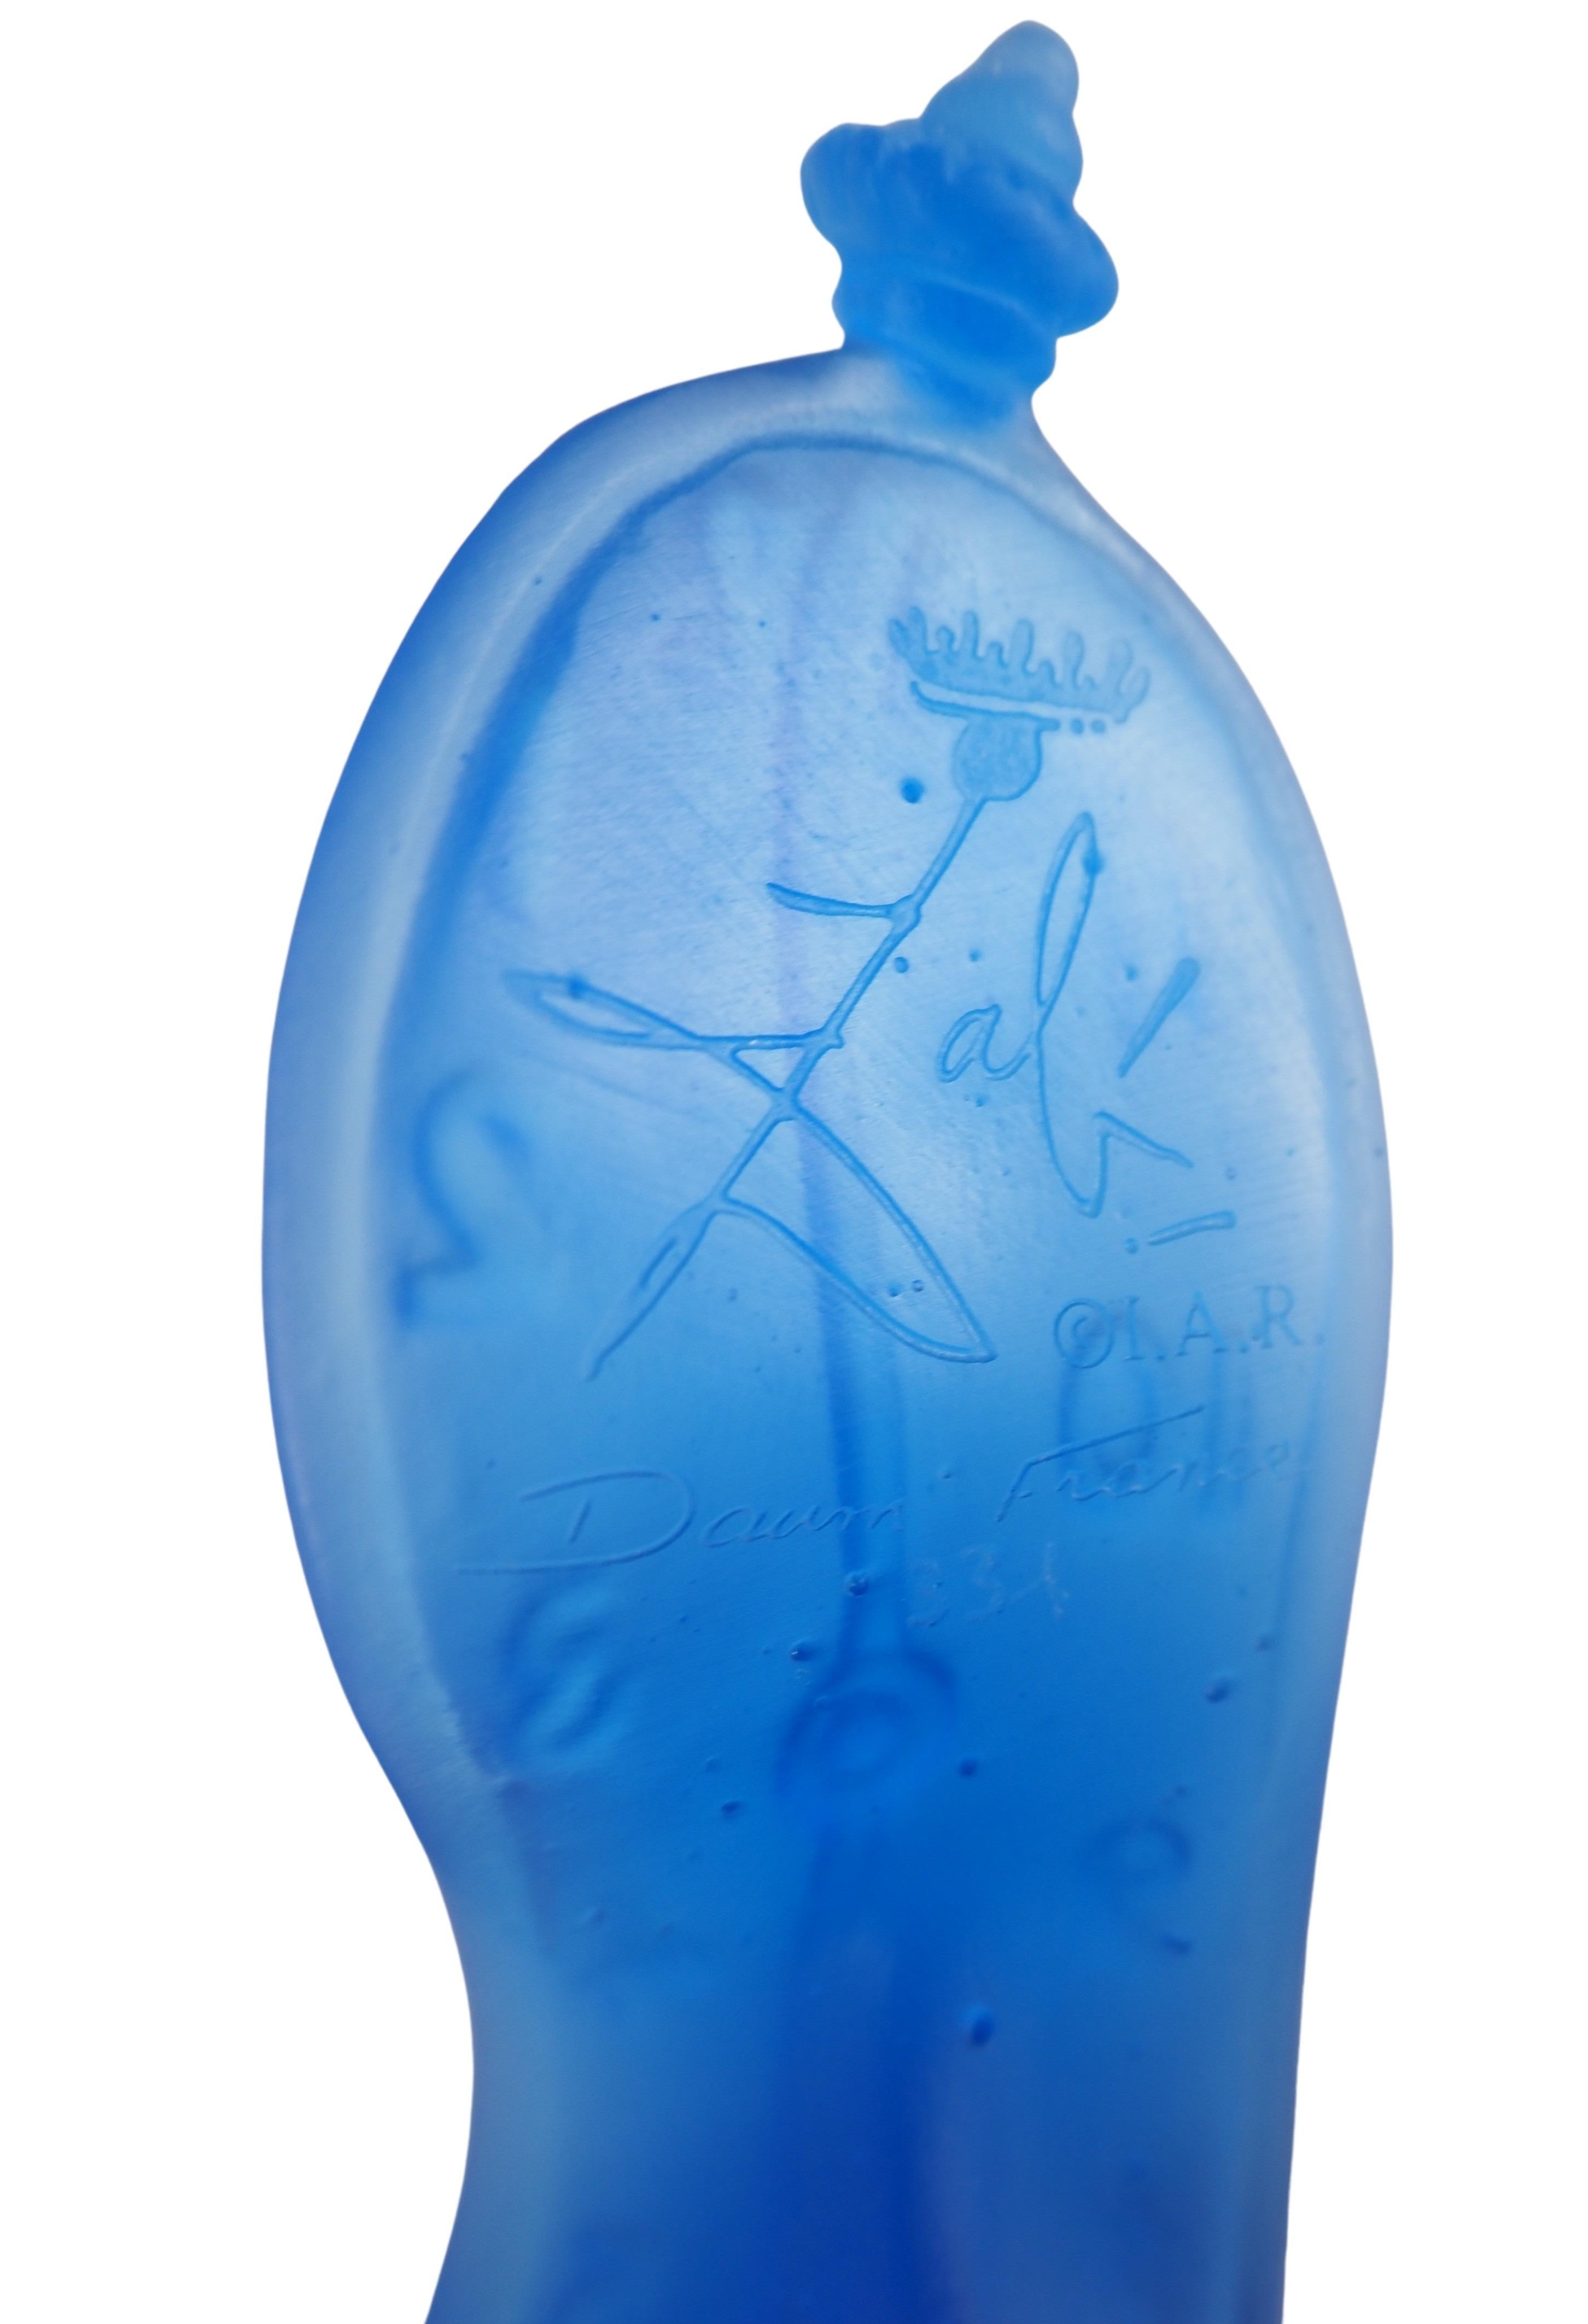 Salvador Dali (1904-1989) et Daum
Horloge Molt : La danse du temps 

Sculpture originale en pâte de verre
Édité et fabriqué à la main par la cristallerie Daum.
Signé dans le verre
environ 10,5 x 6,5 x 6 cm 
Authentifié par le sceau de Daum au dos et